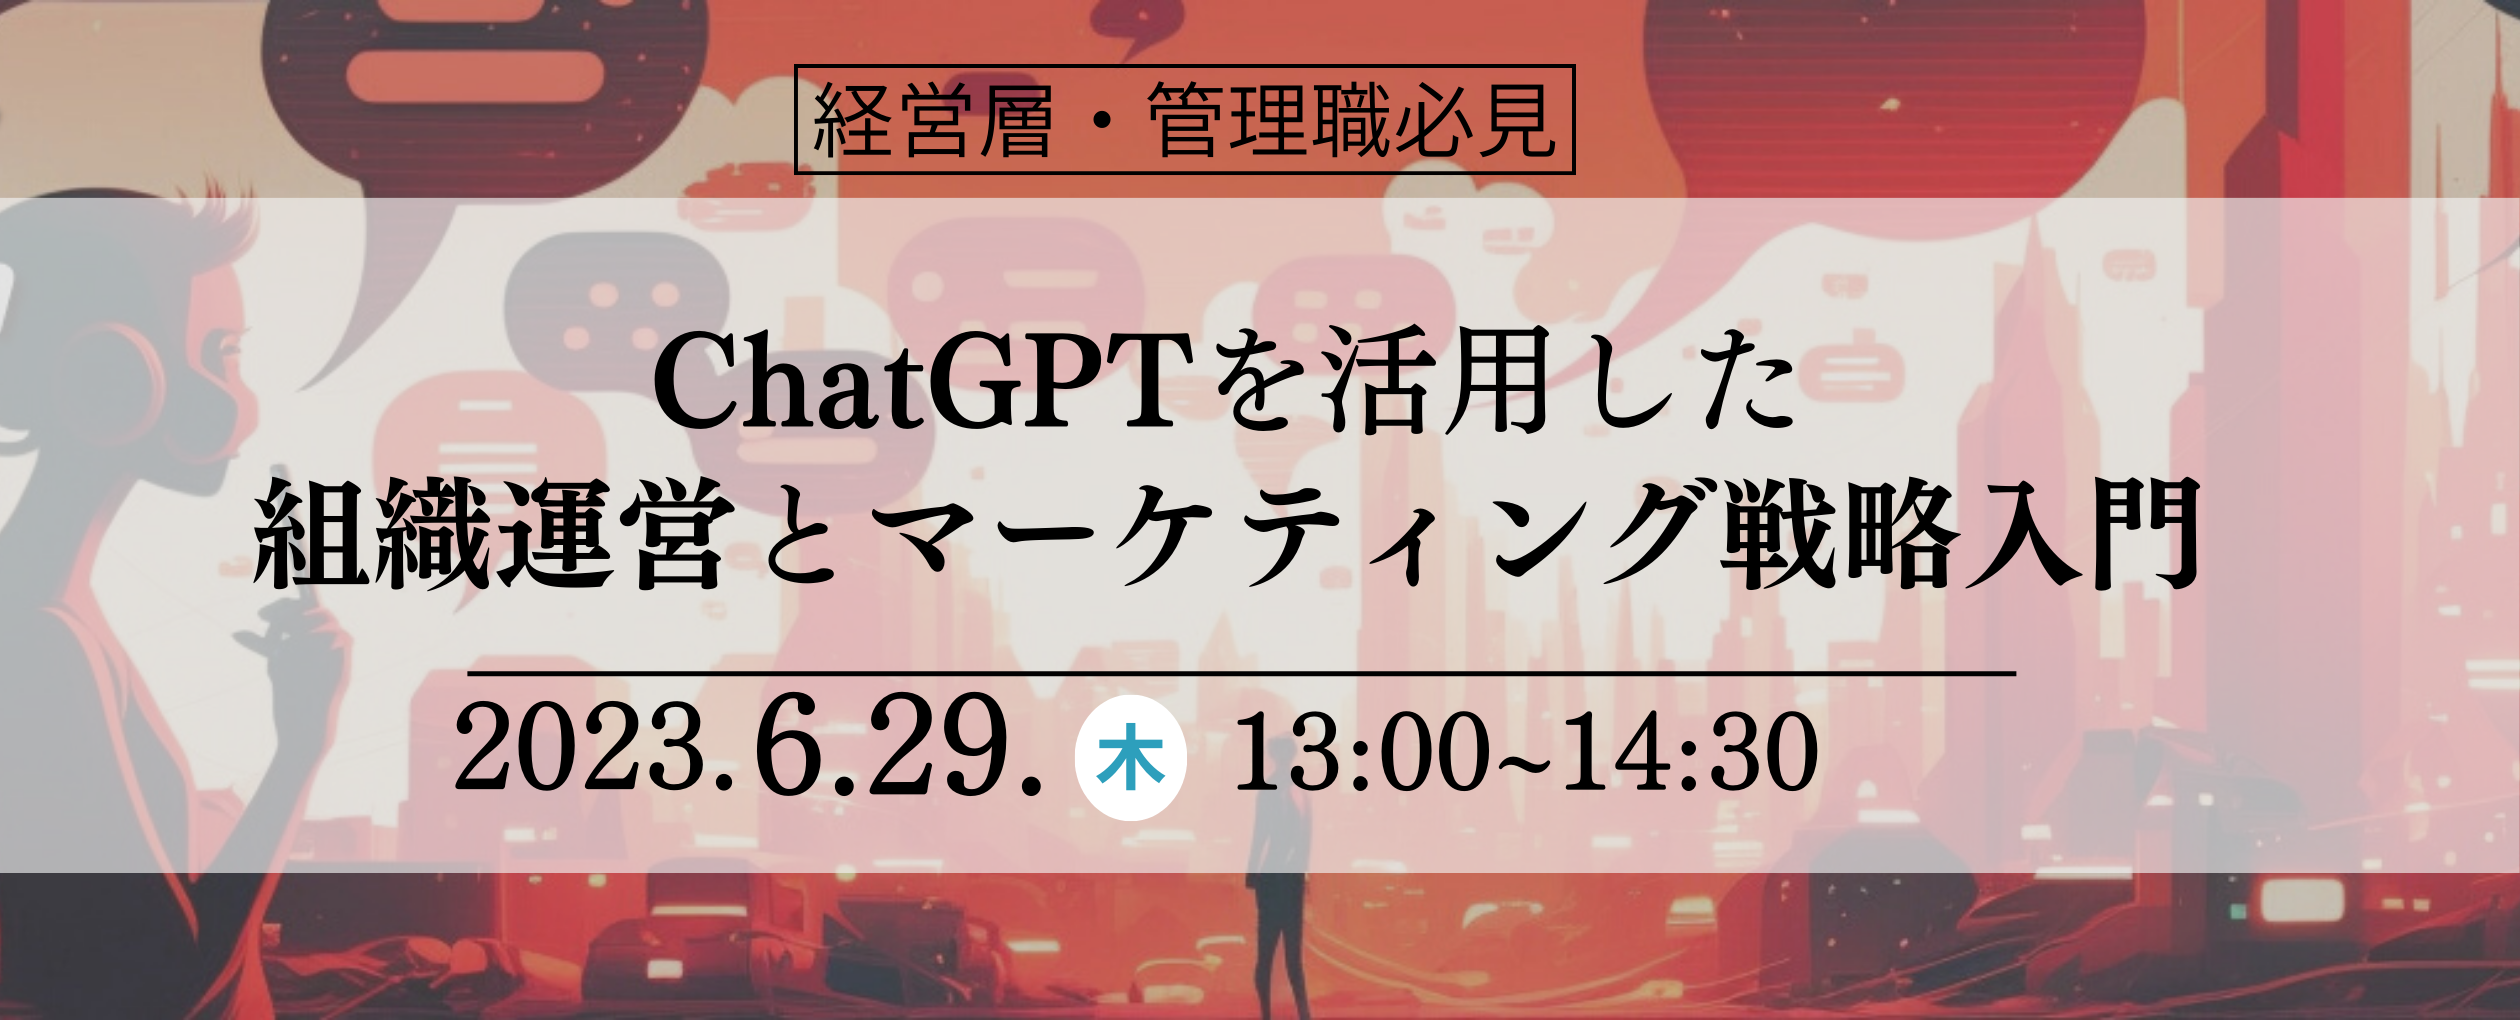 【6月29日】ChatGPTを活用した 組織運営とマーケティング戦略入門